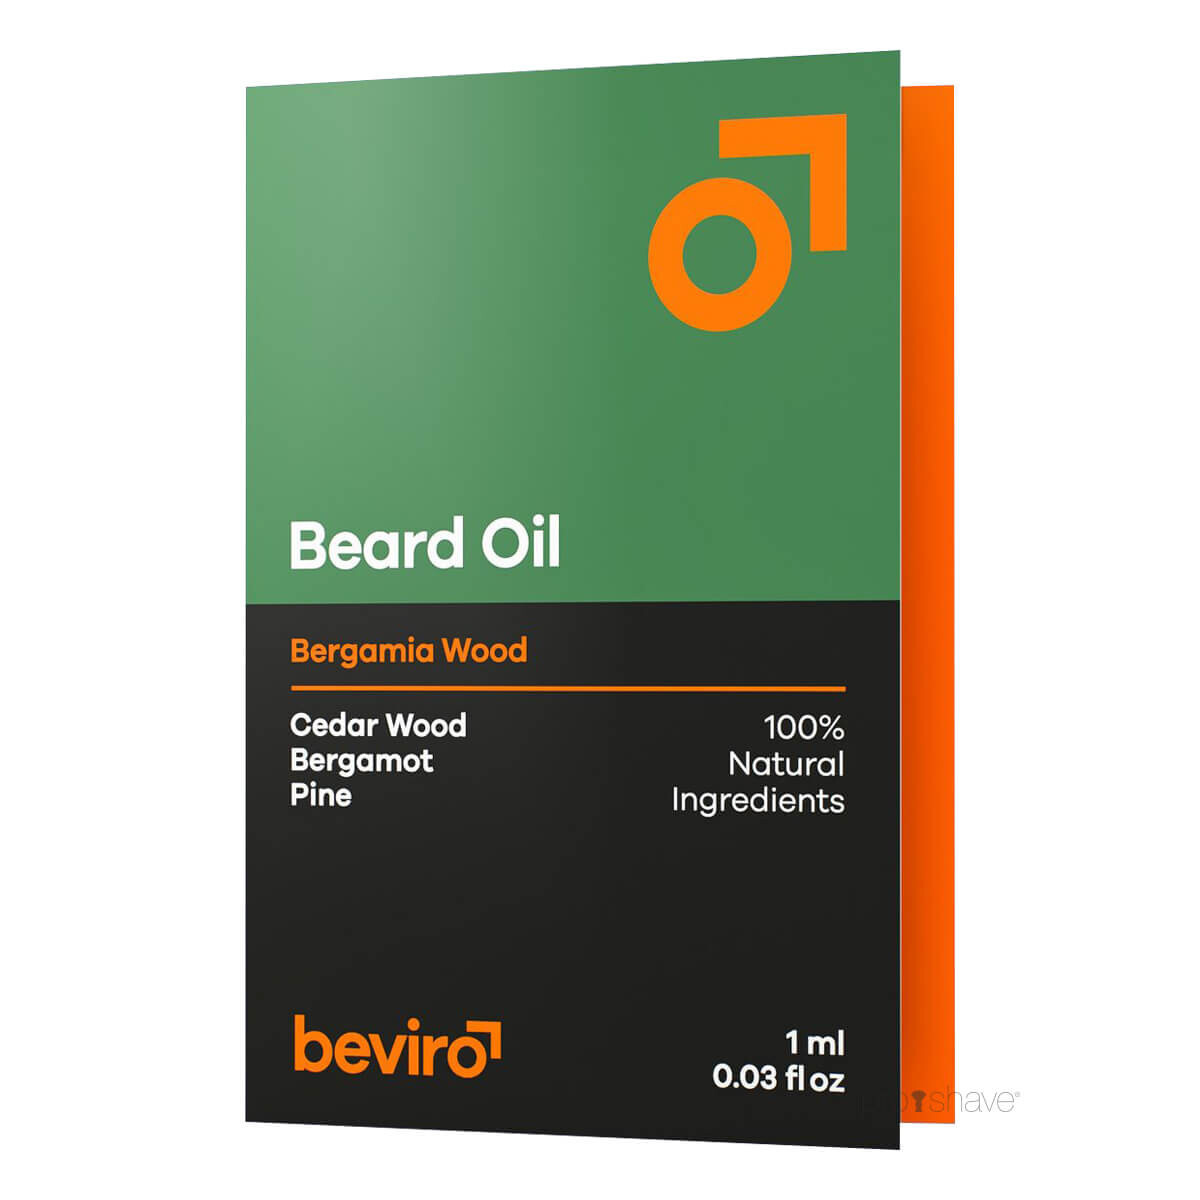 Se Beviro Beard Oil, Bergamia Wood, Sample, 1 ml. hos Proshave